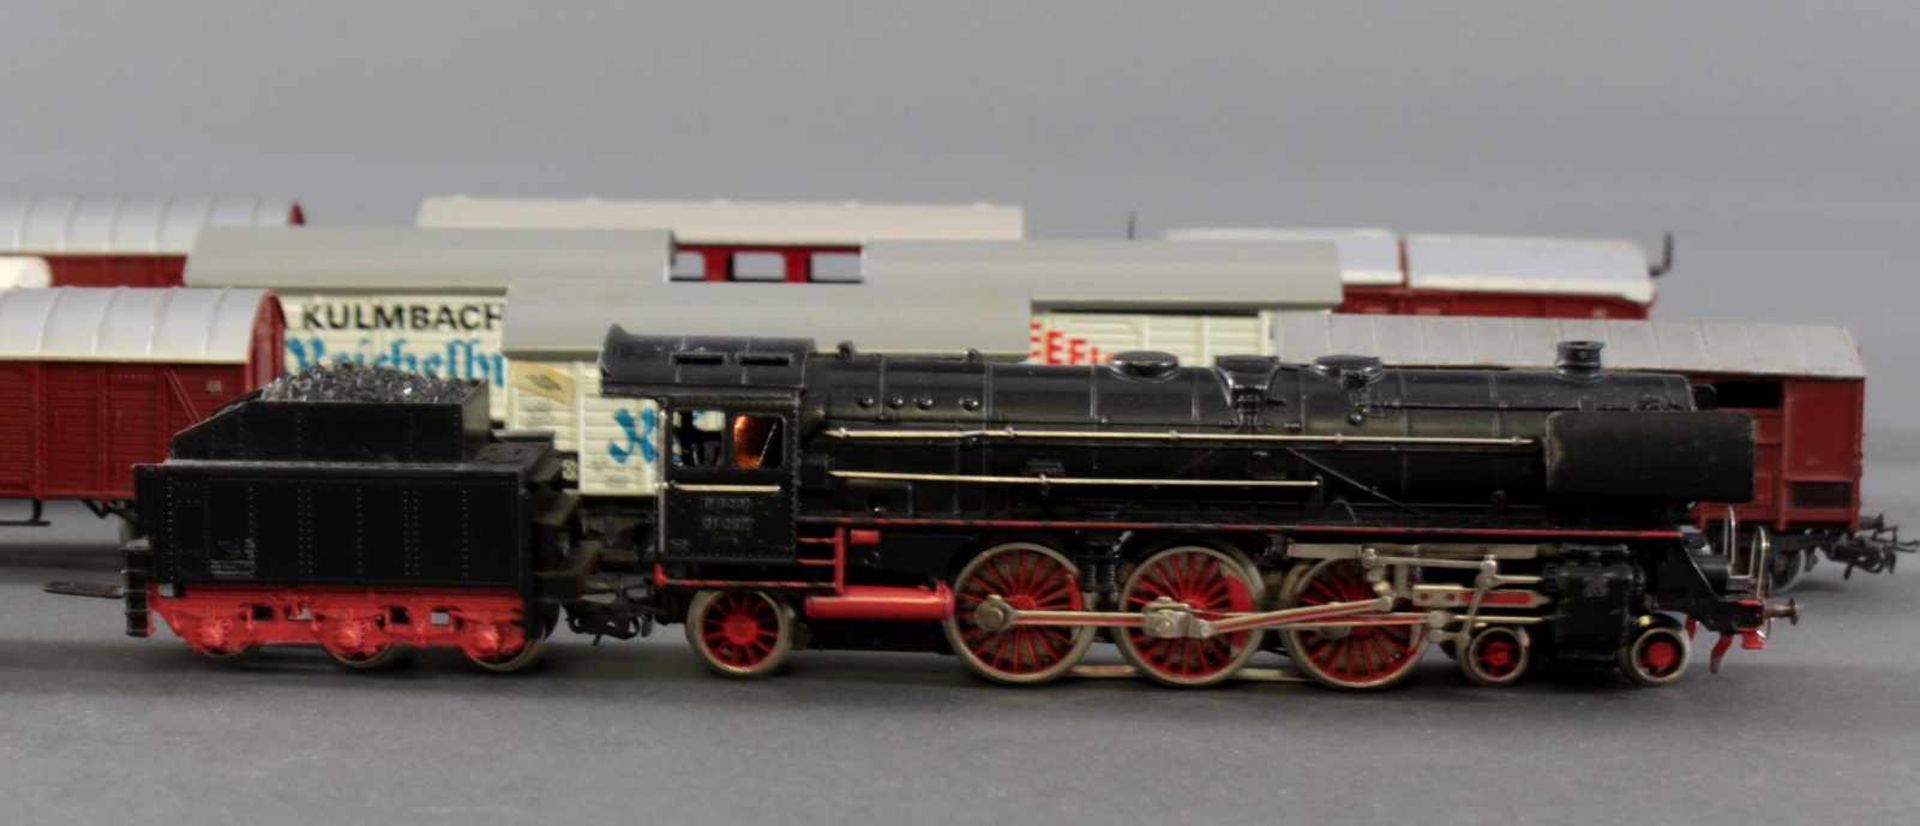 Märklin Dampflok F800 BR 01 097 mit 10 Güterwaggons aus Kunststoff und Blech, Spur H0 - Bild 4 aus 4